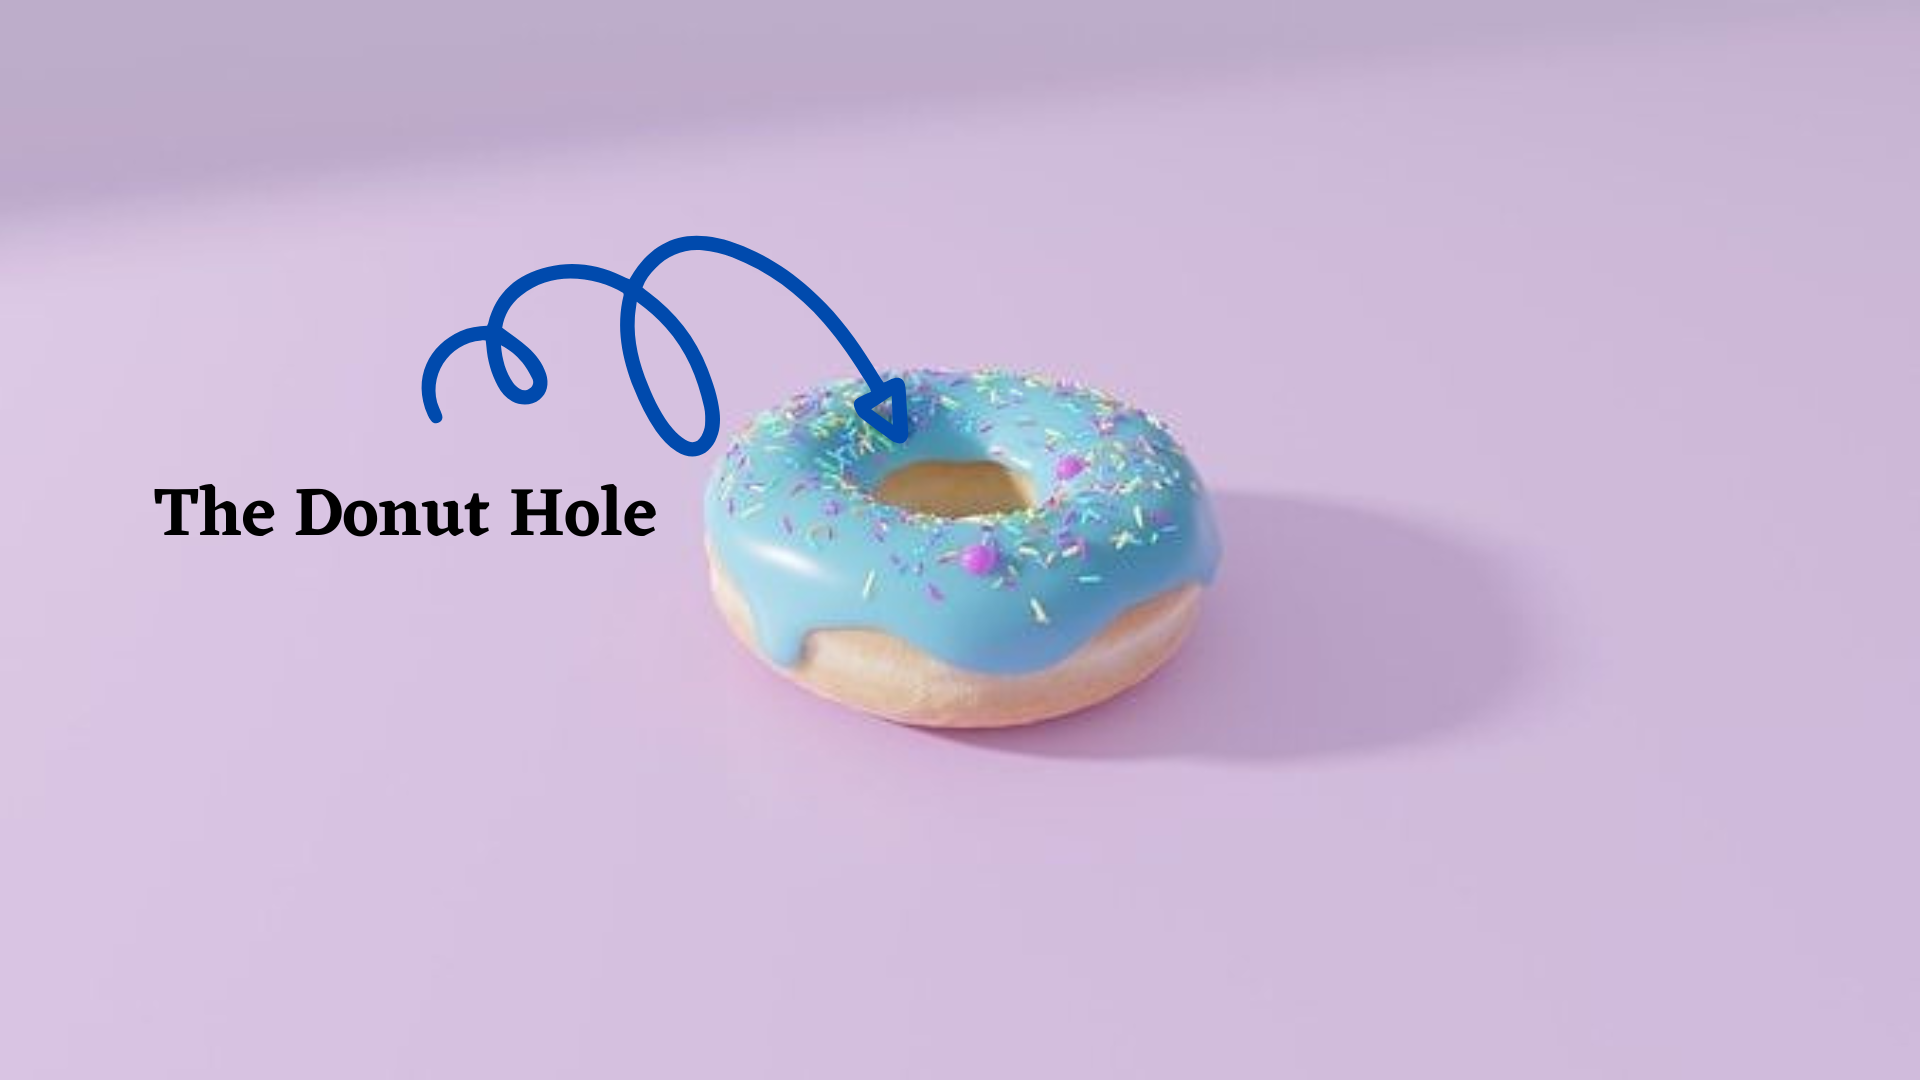 Donut hole stock photo